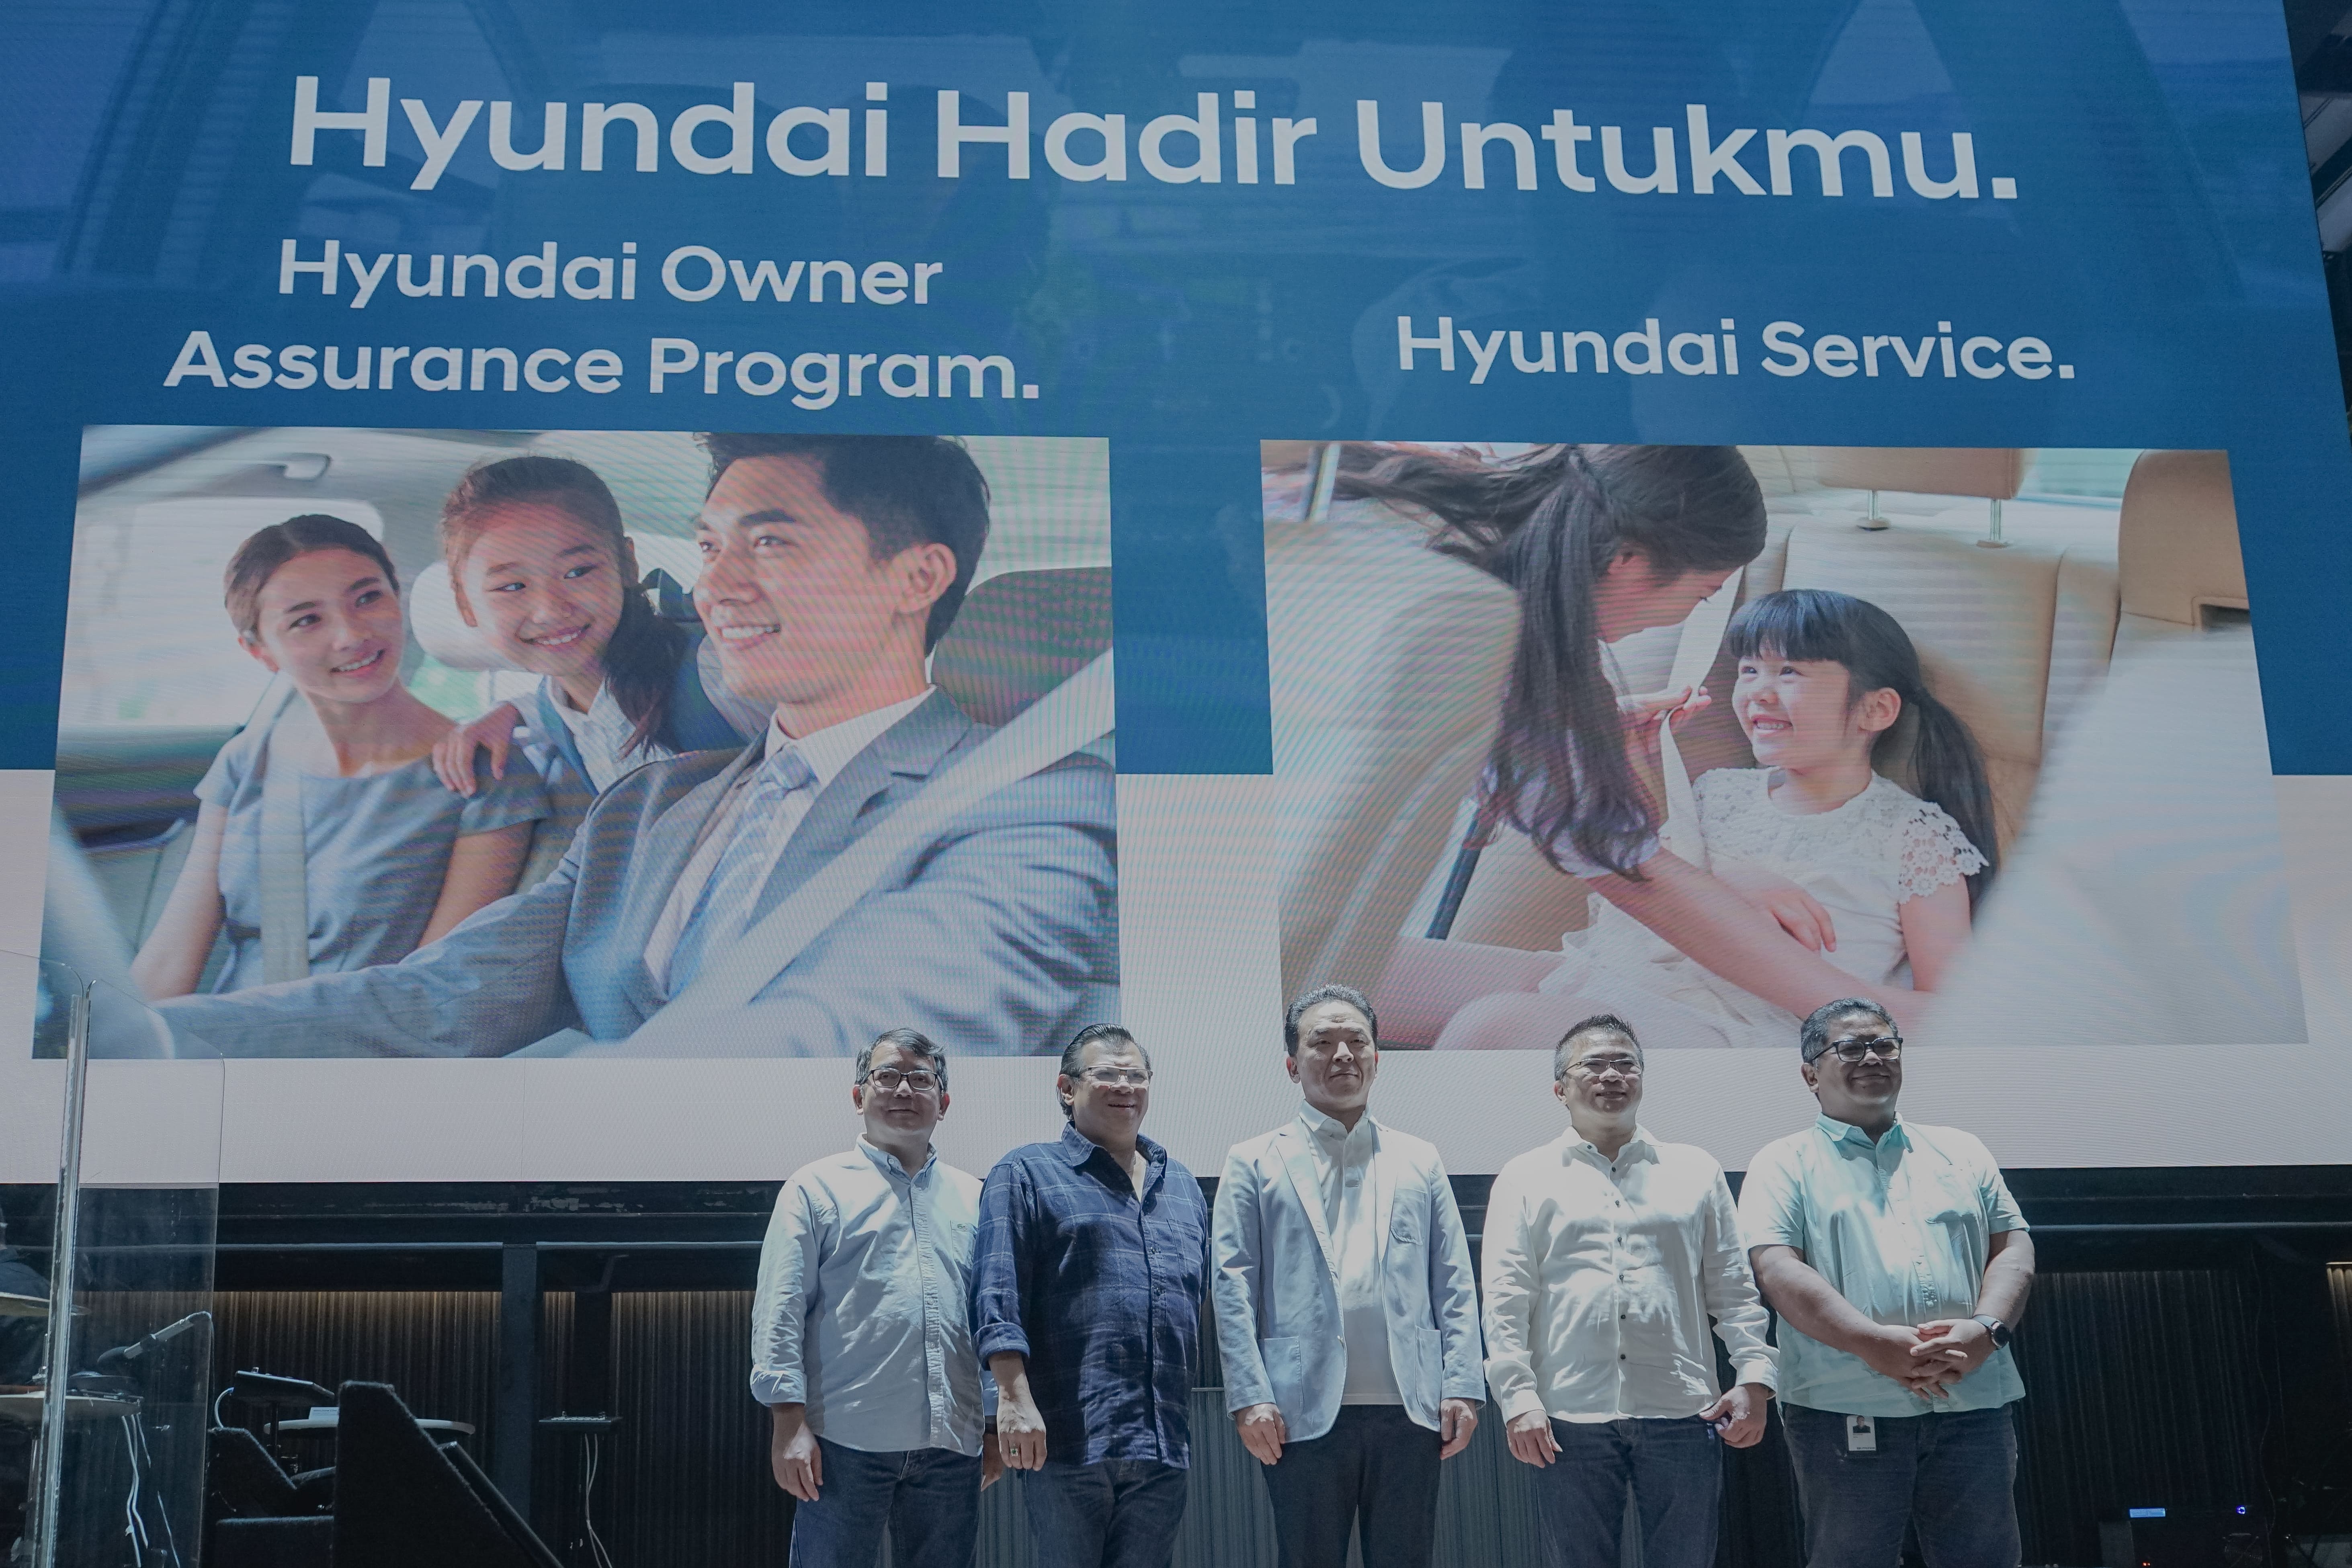 Sambut 2023, Hyundai Perkenalkan Inovasi Purnajual Terbaru “Hyundai Hadir Untukmu” 